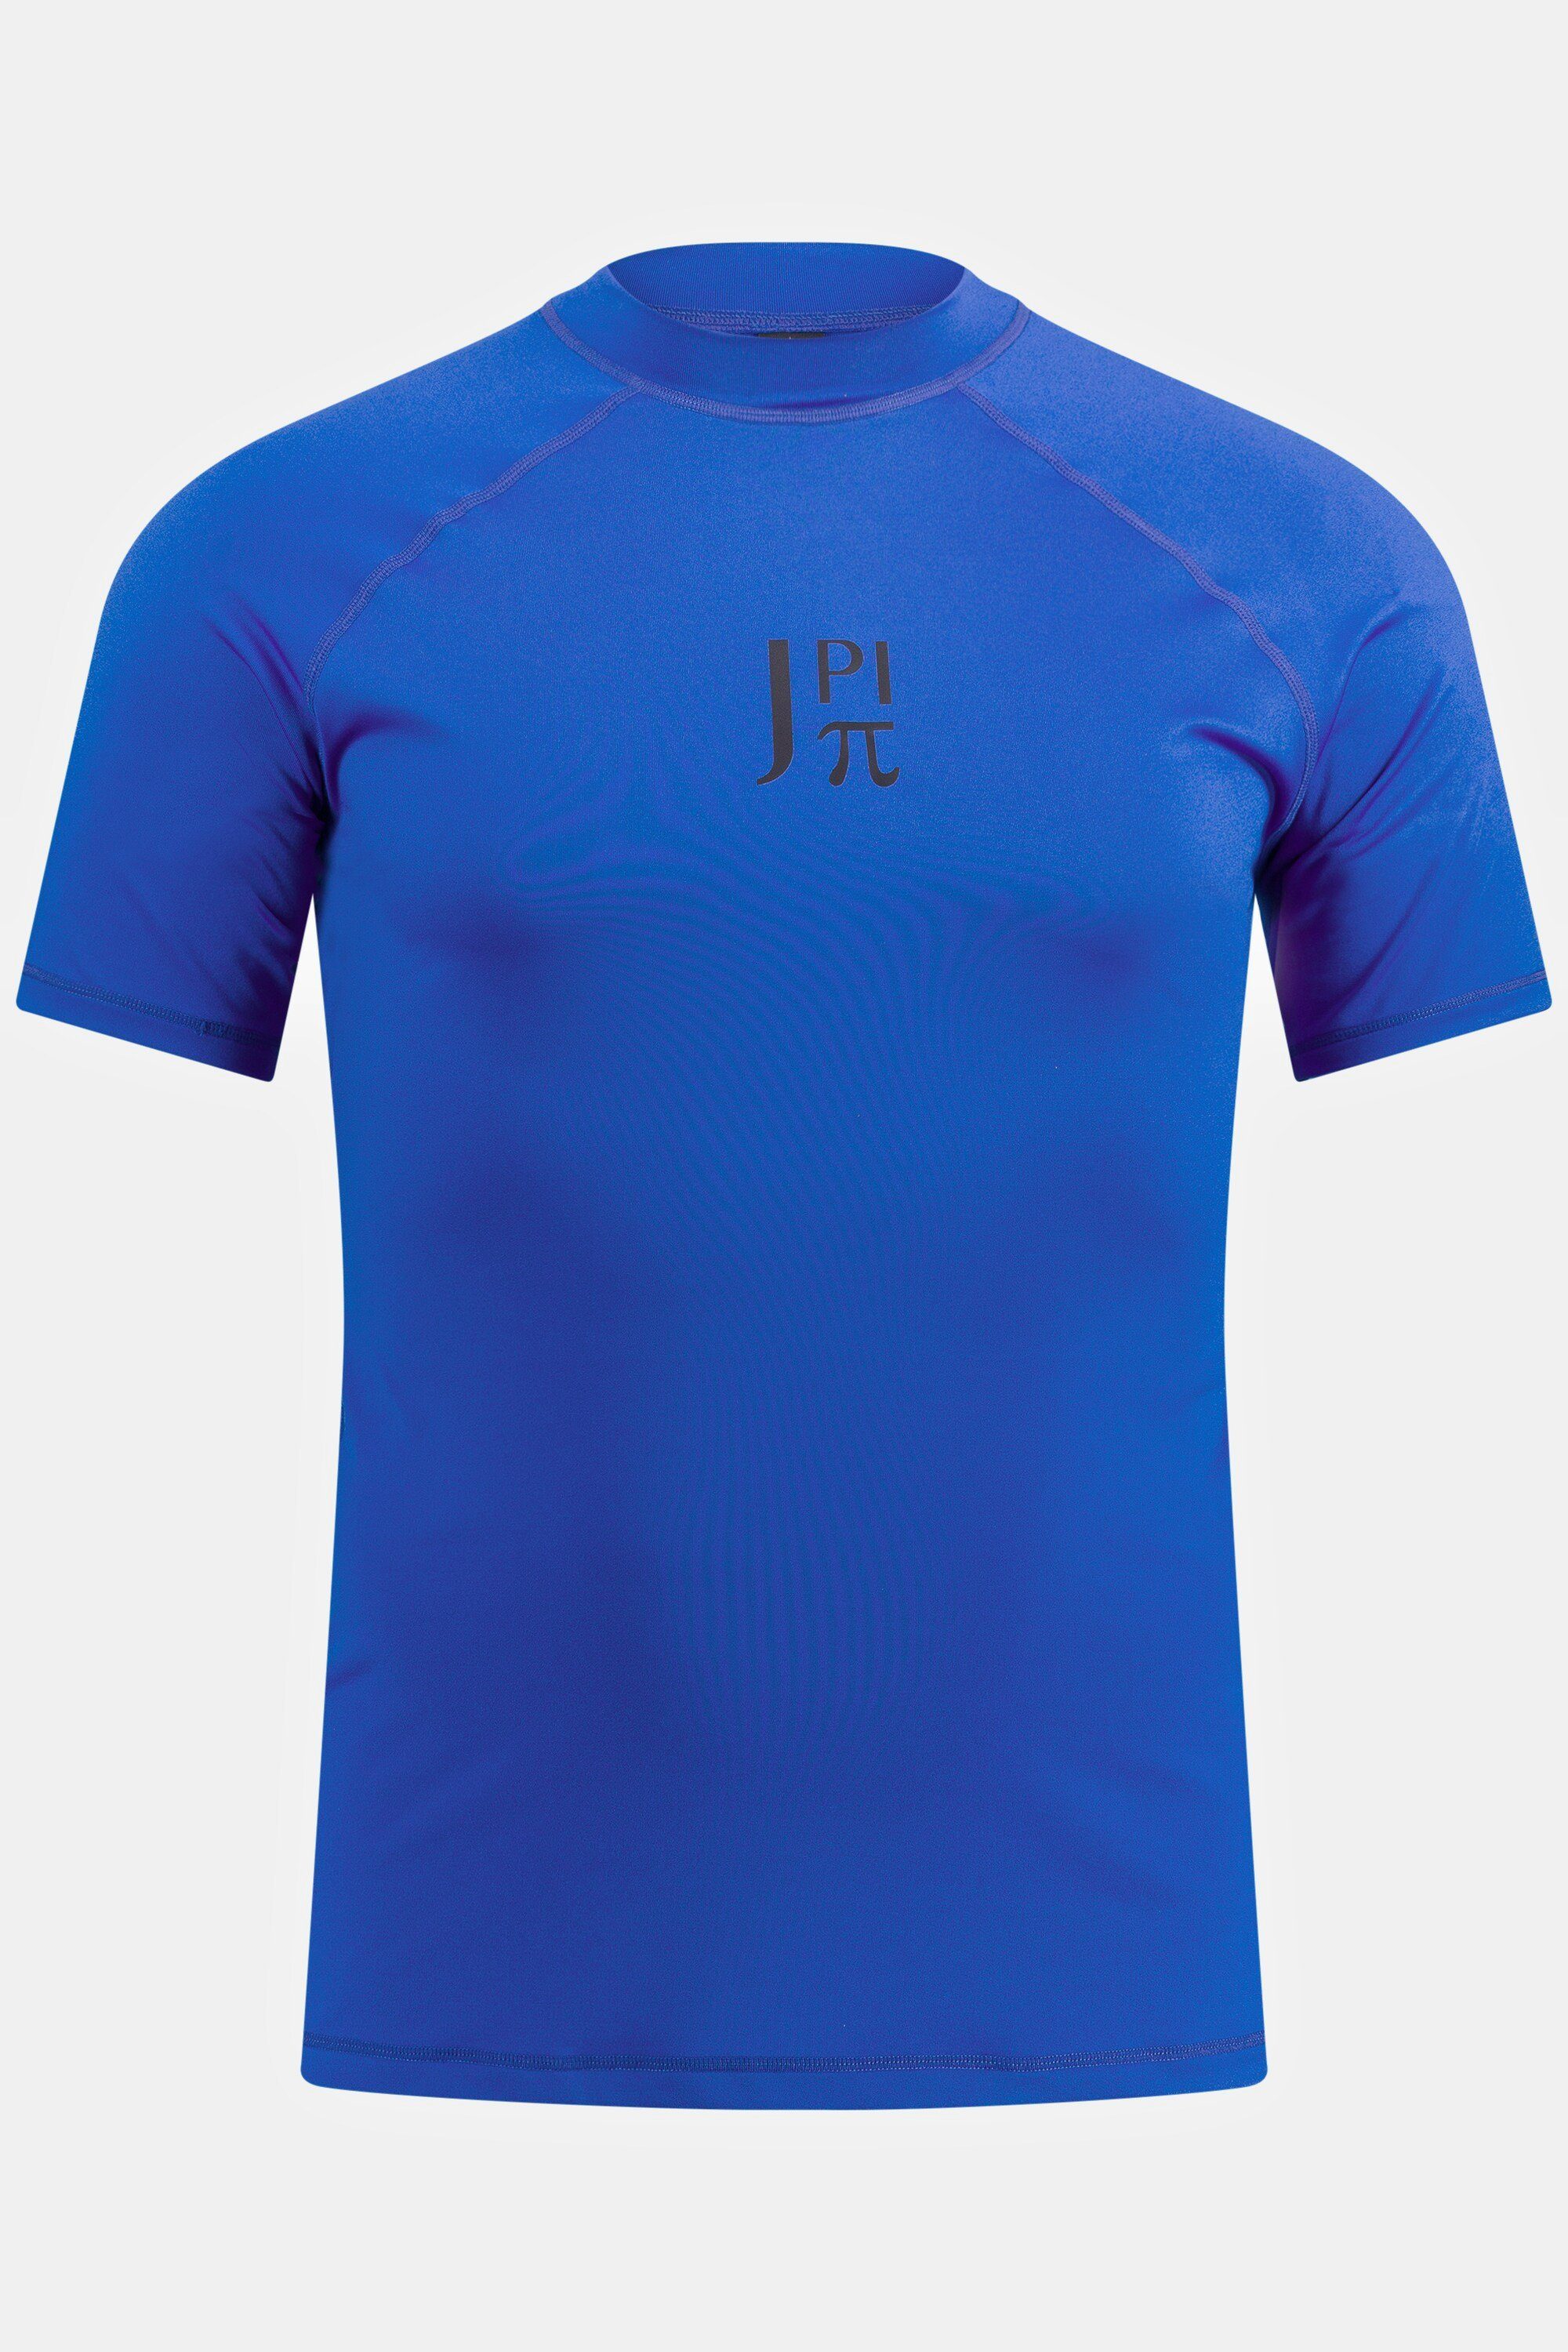 Halbarm JP1880 T-Shirt Schwimmshirt Stehkragen UV-Schutz blau